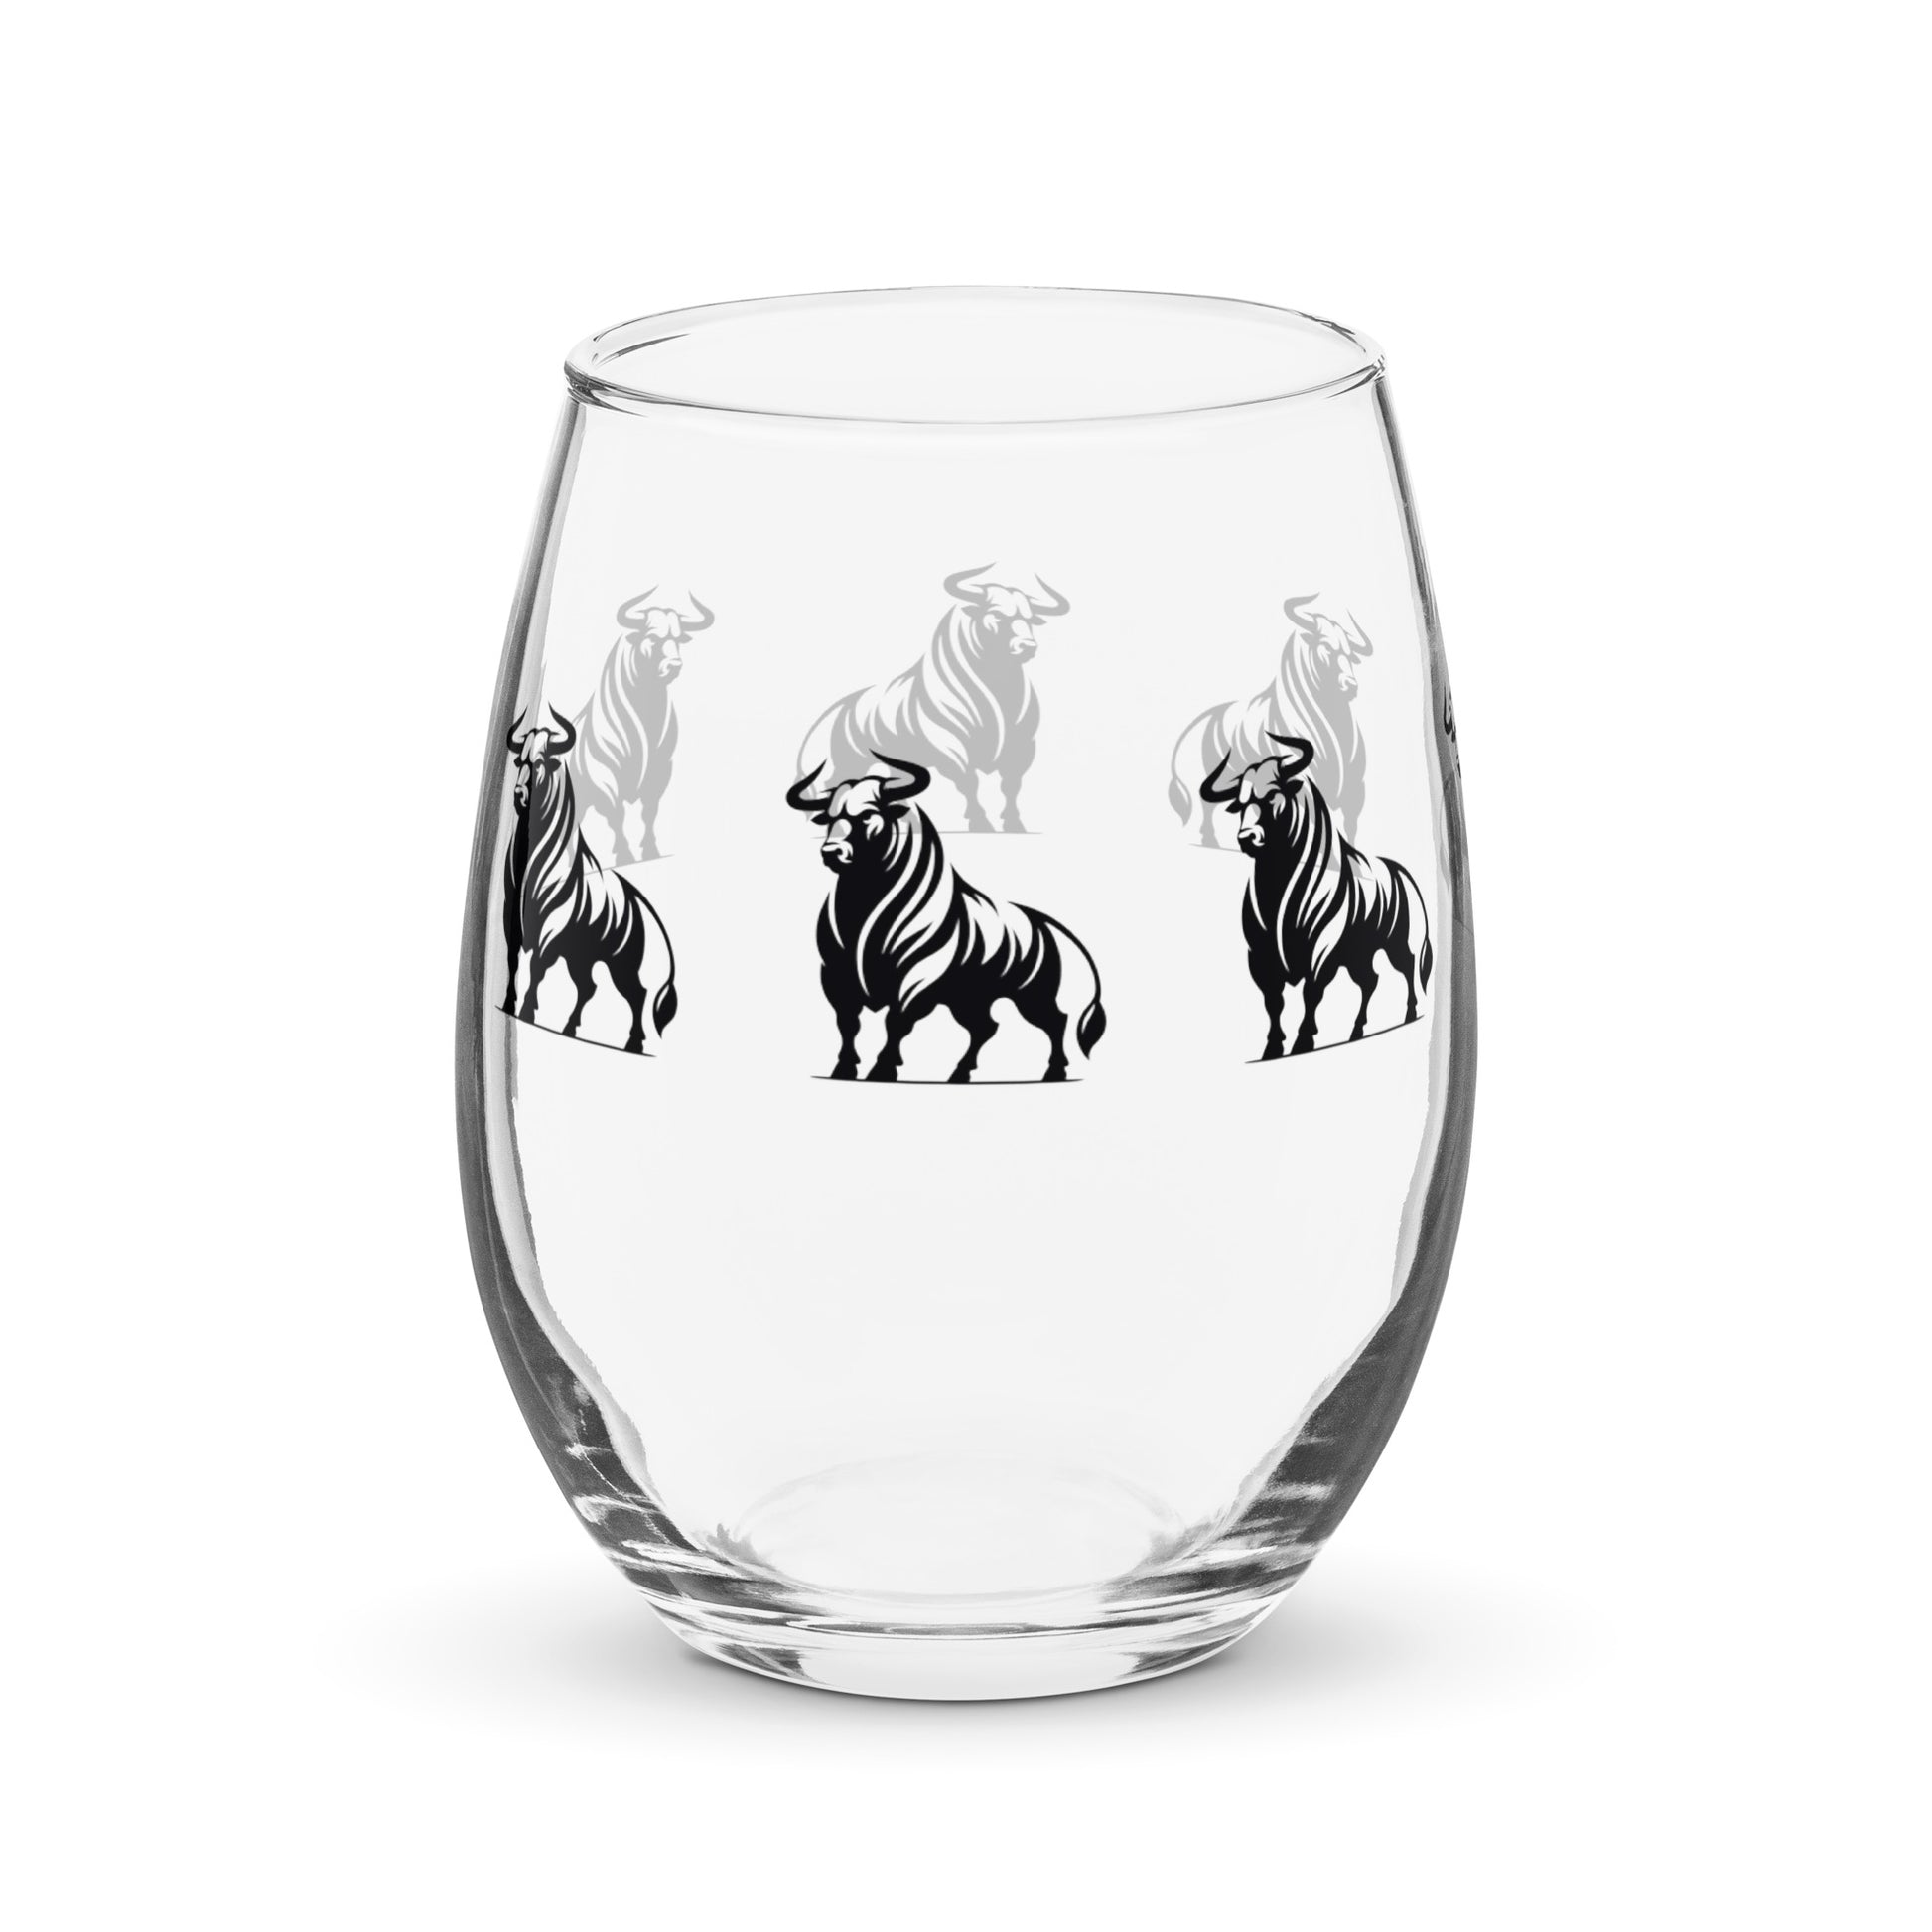 adrian del lago bull personalized wine glass wine glass